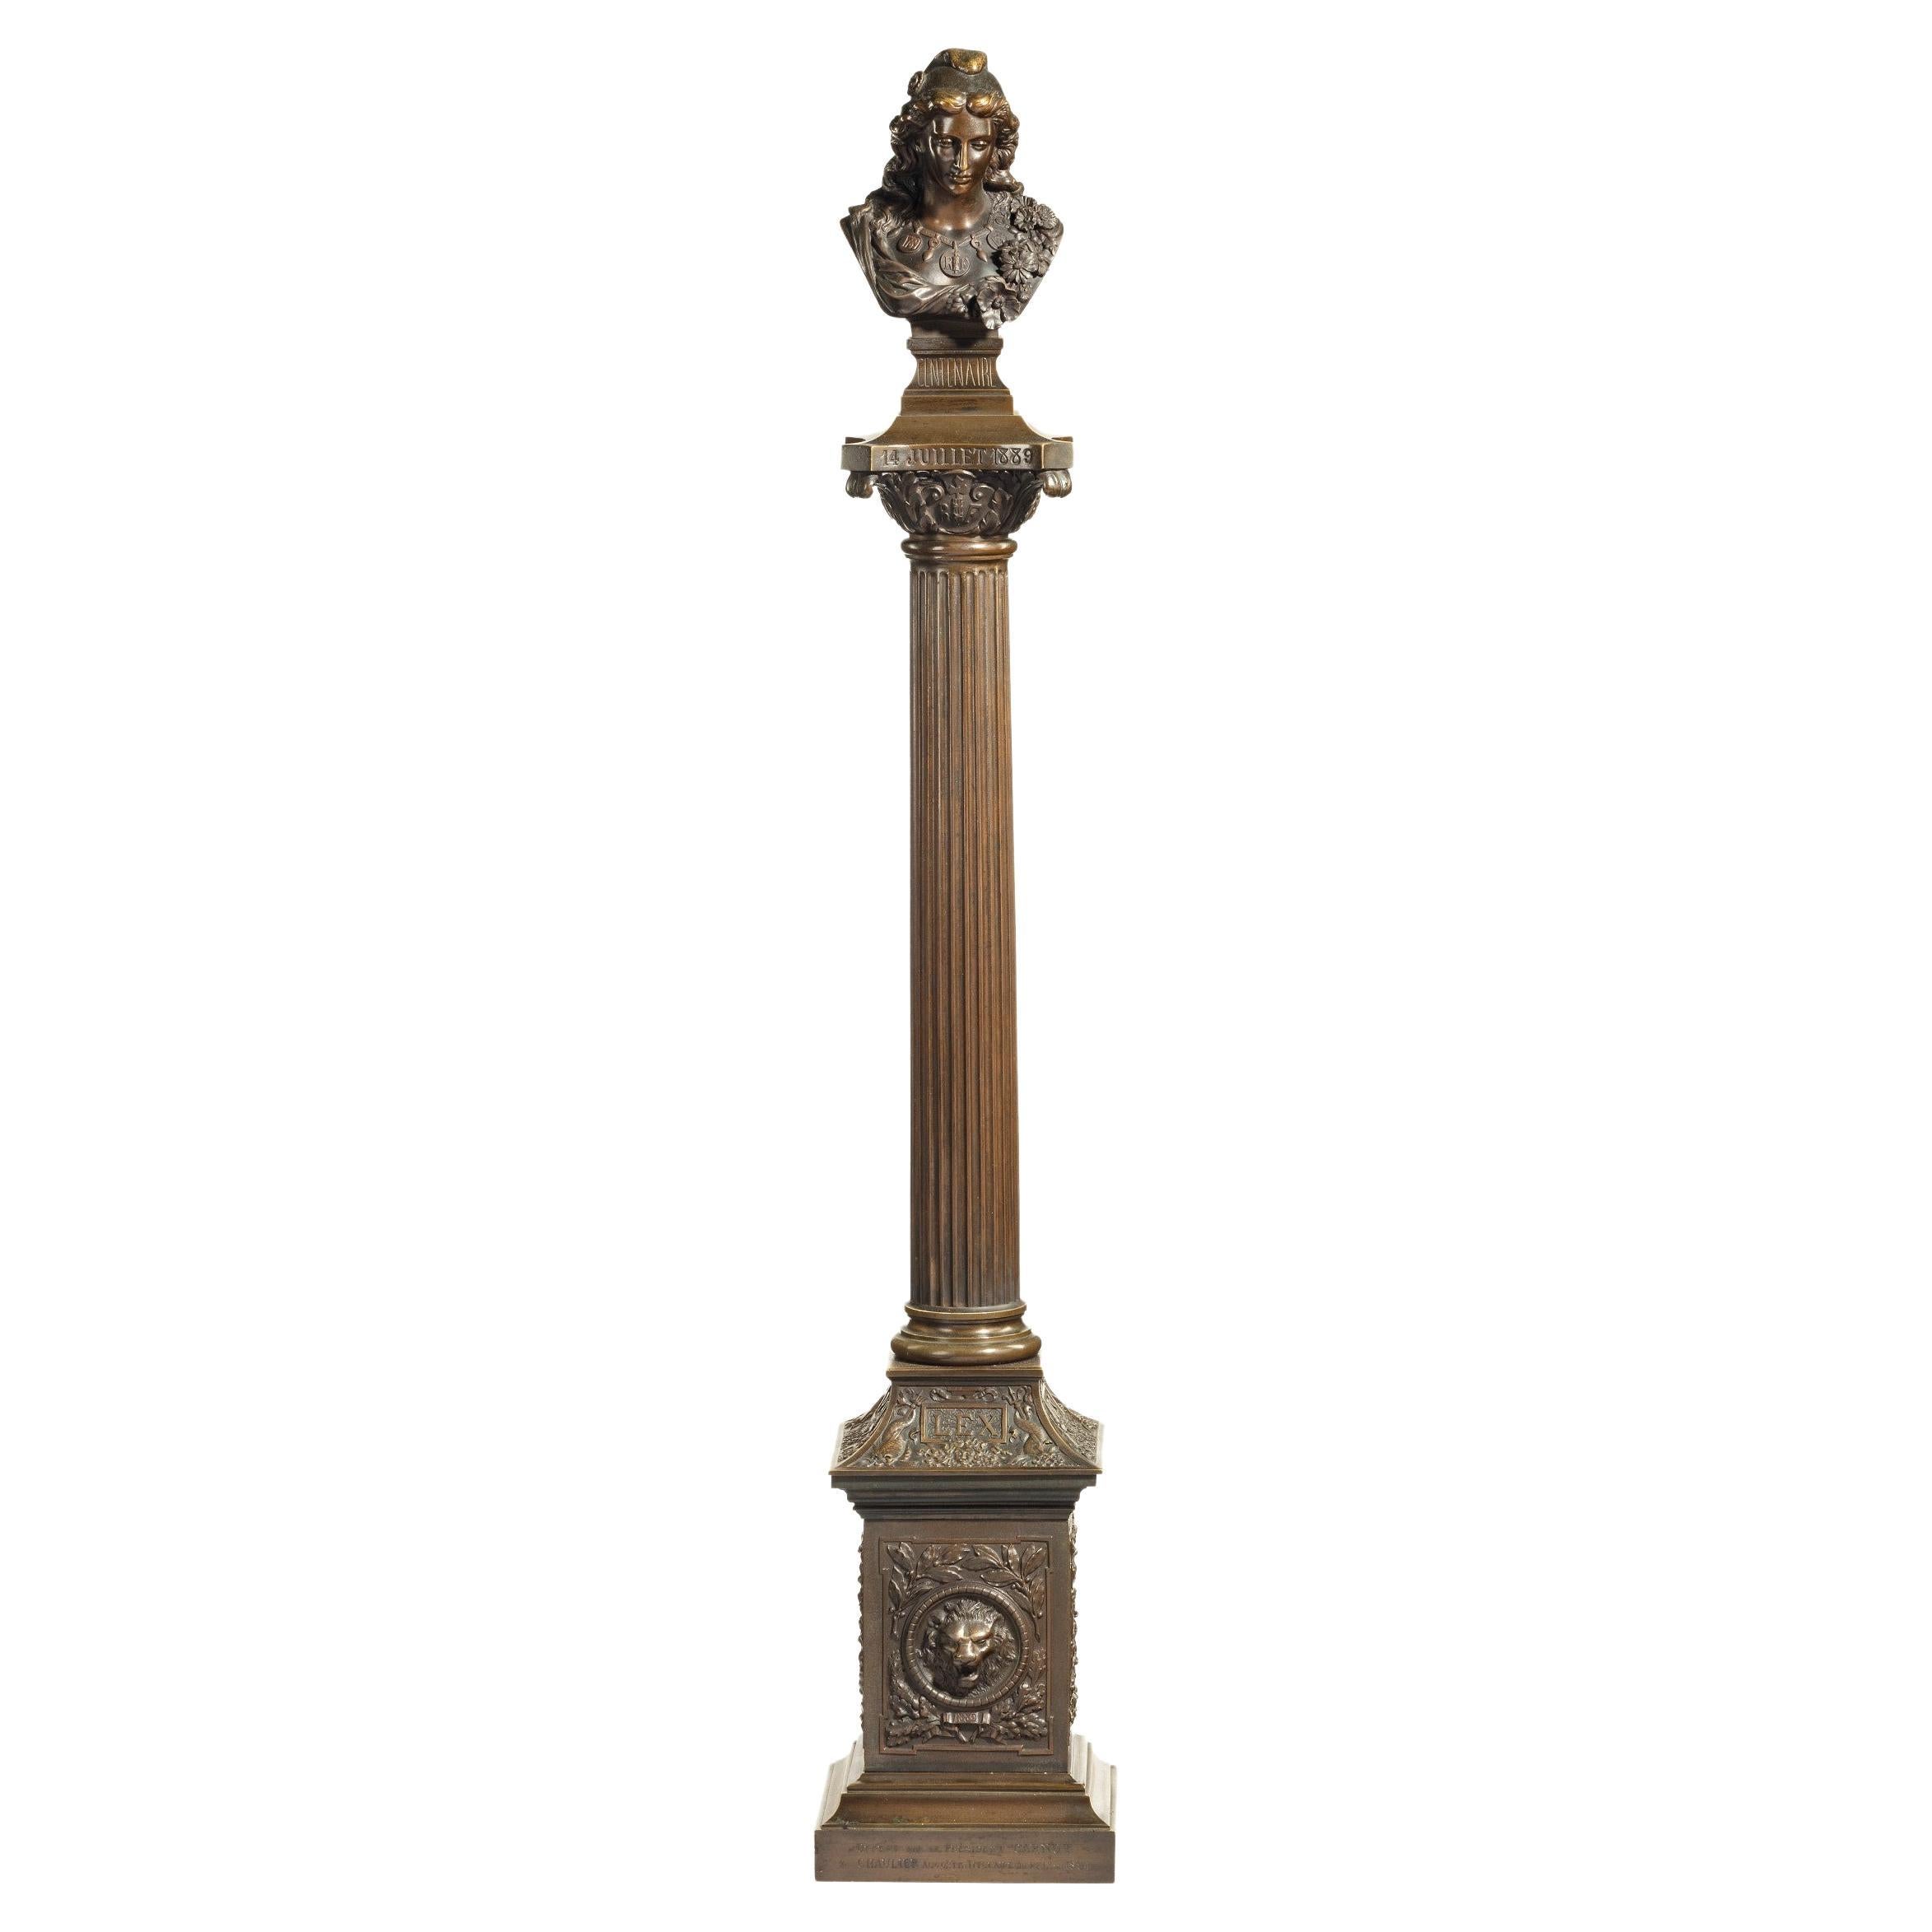 Columne en bronze représentant La Colonne de la Republique datée de 1889, d'après Paul L